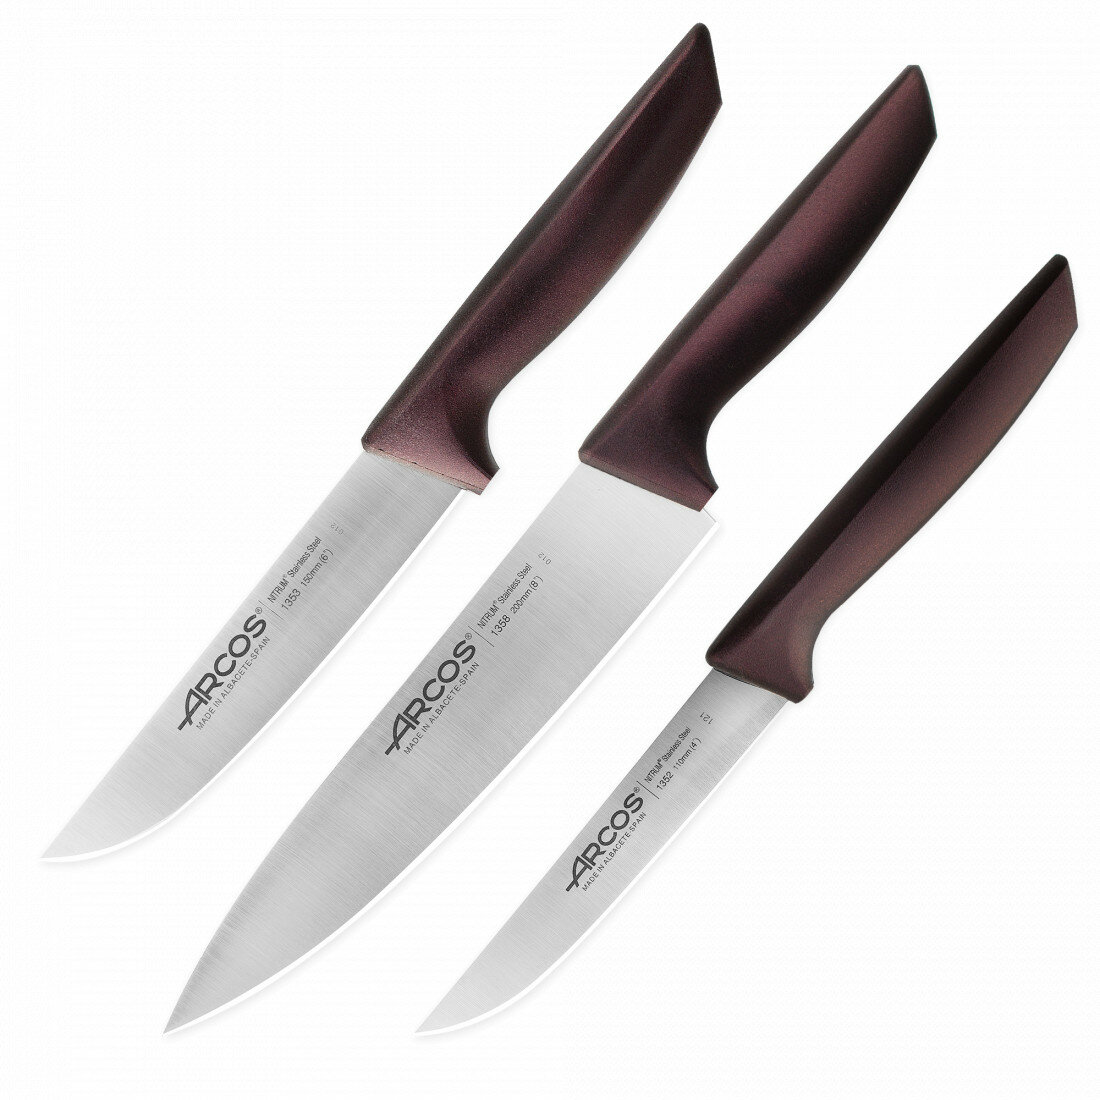 Набор кухонных ножей в коробке, 3 шт (110 мм, 150 мм, 200 мм,) бордовые ручки, серия Niza, 818045, ARCOS